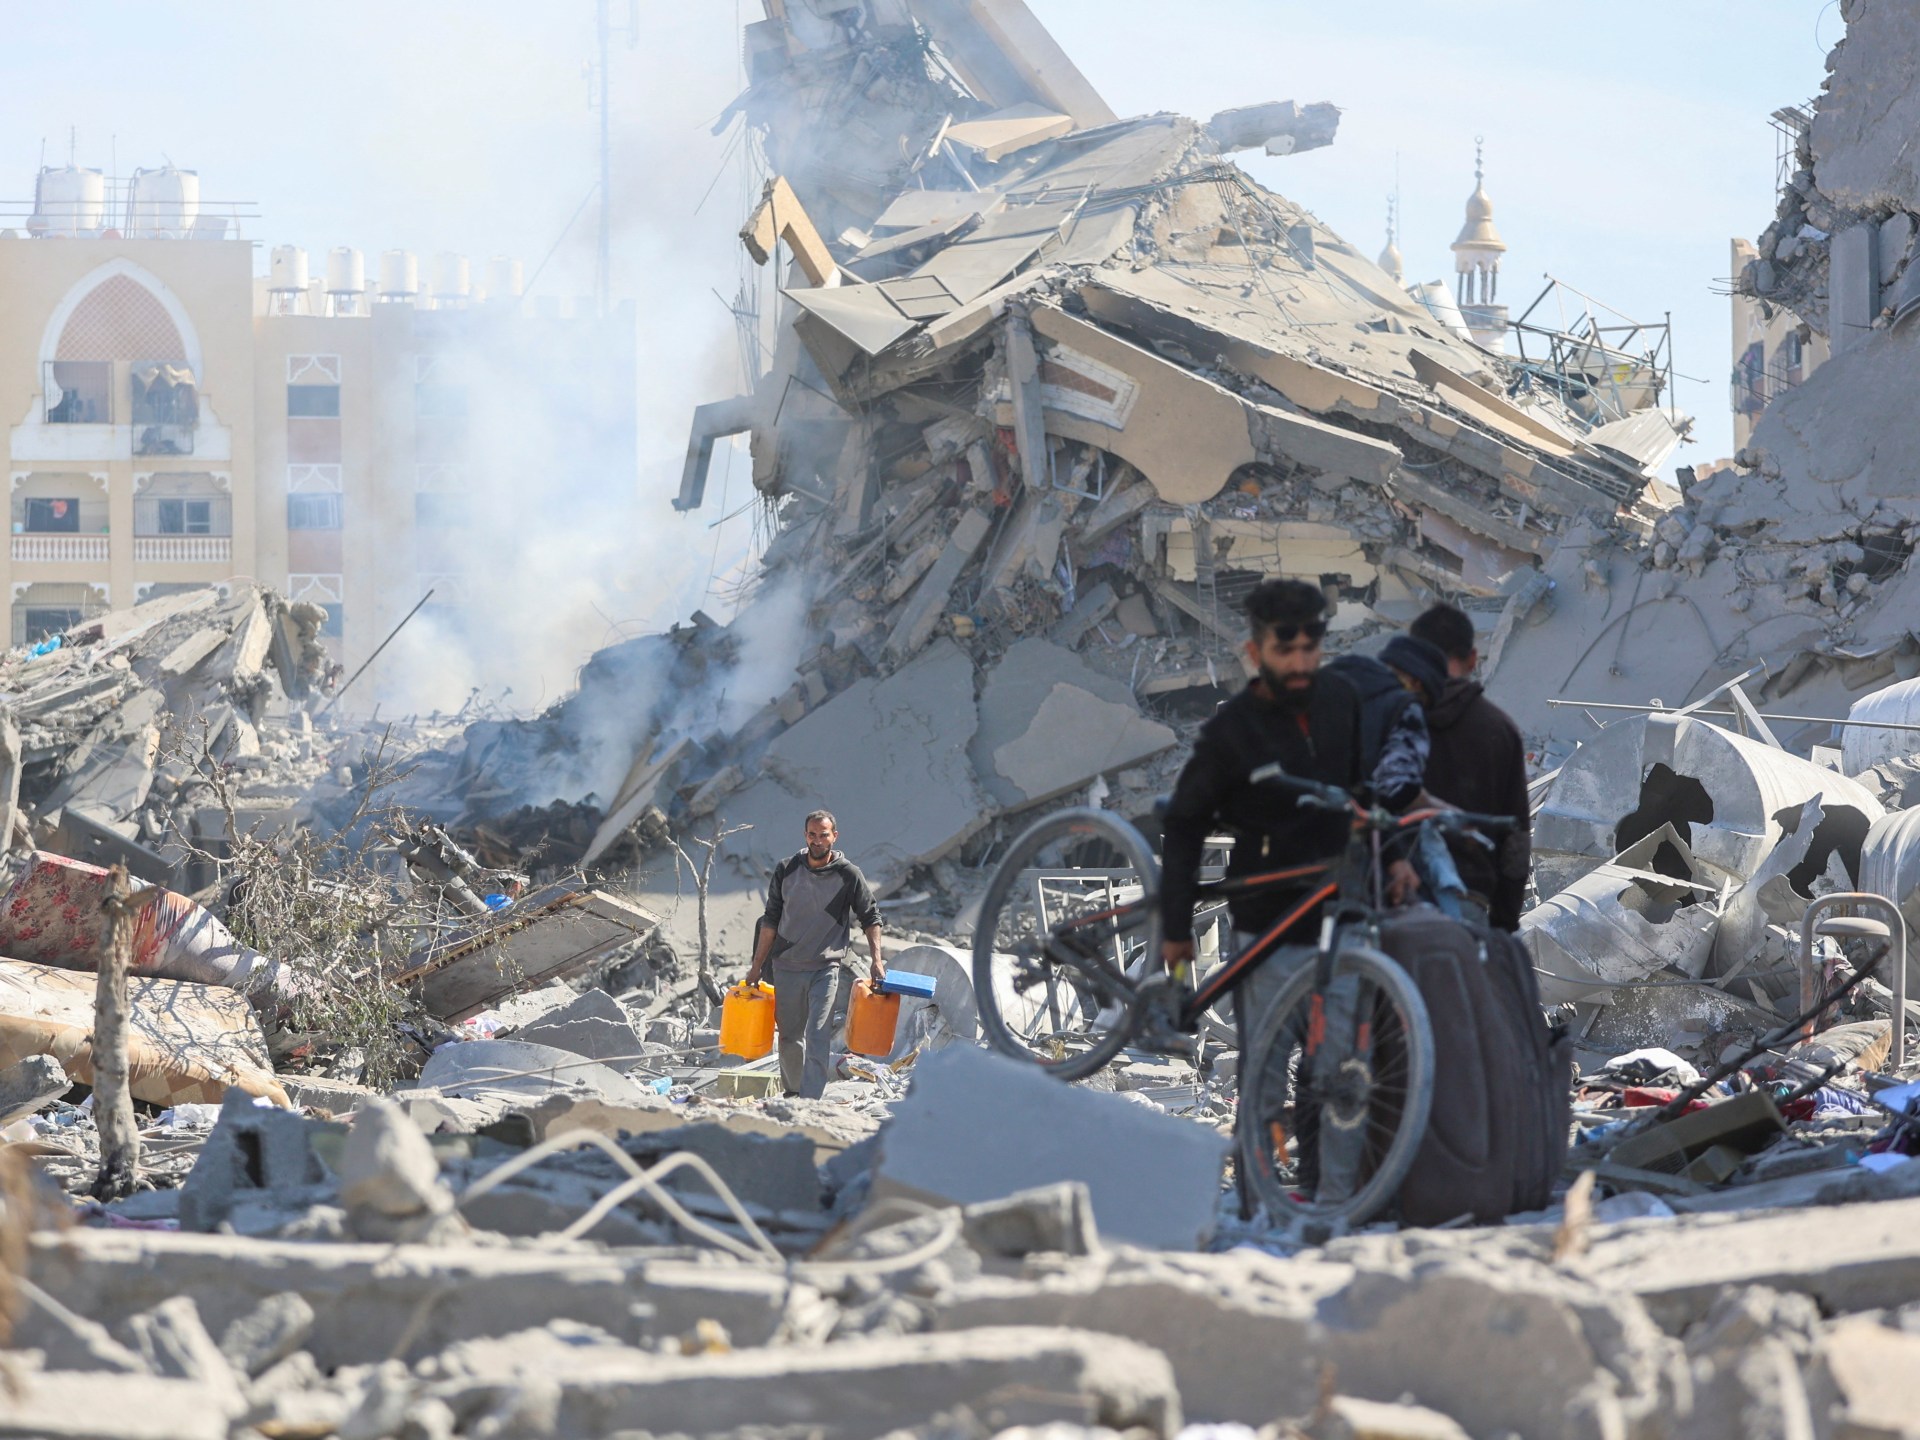 6 أشهر من حرب إبادة غزة في أرقام | أخبار سياسة – البوكس نيوز